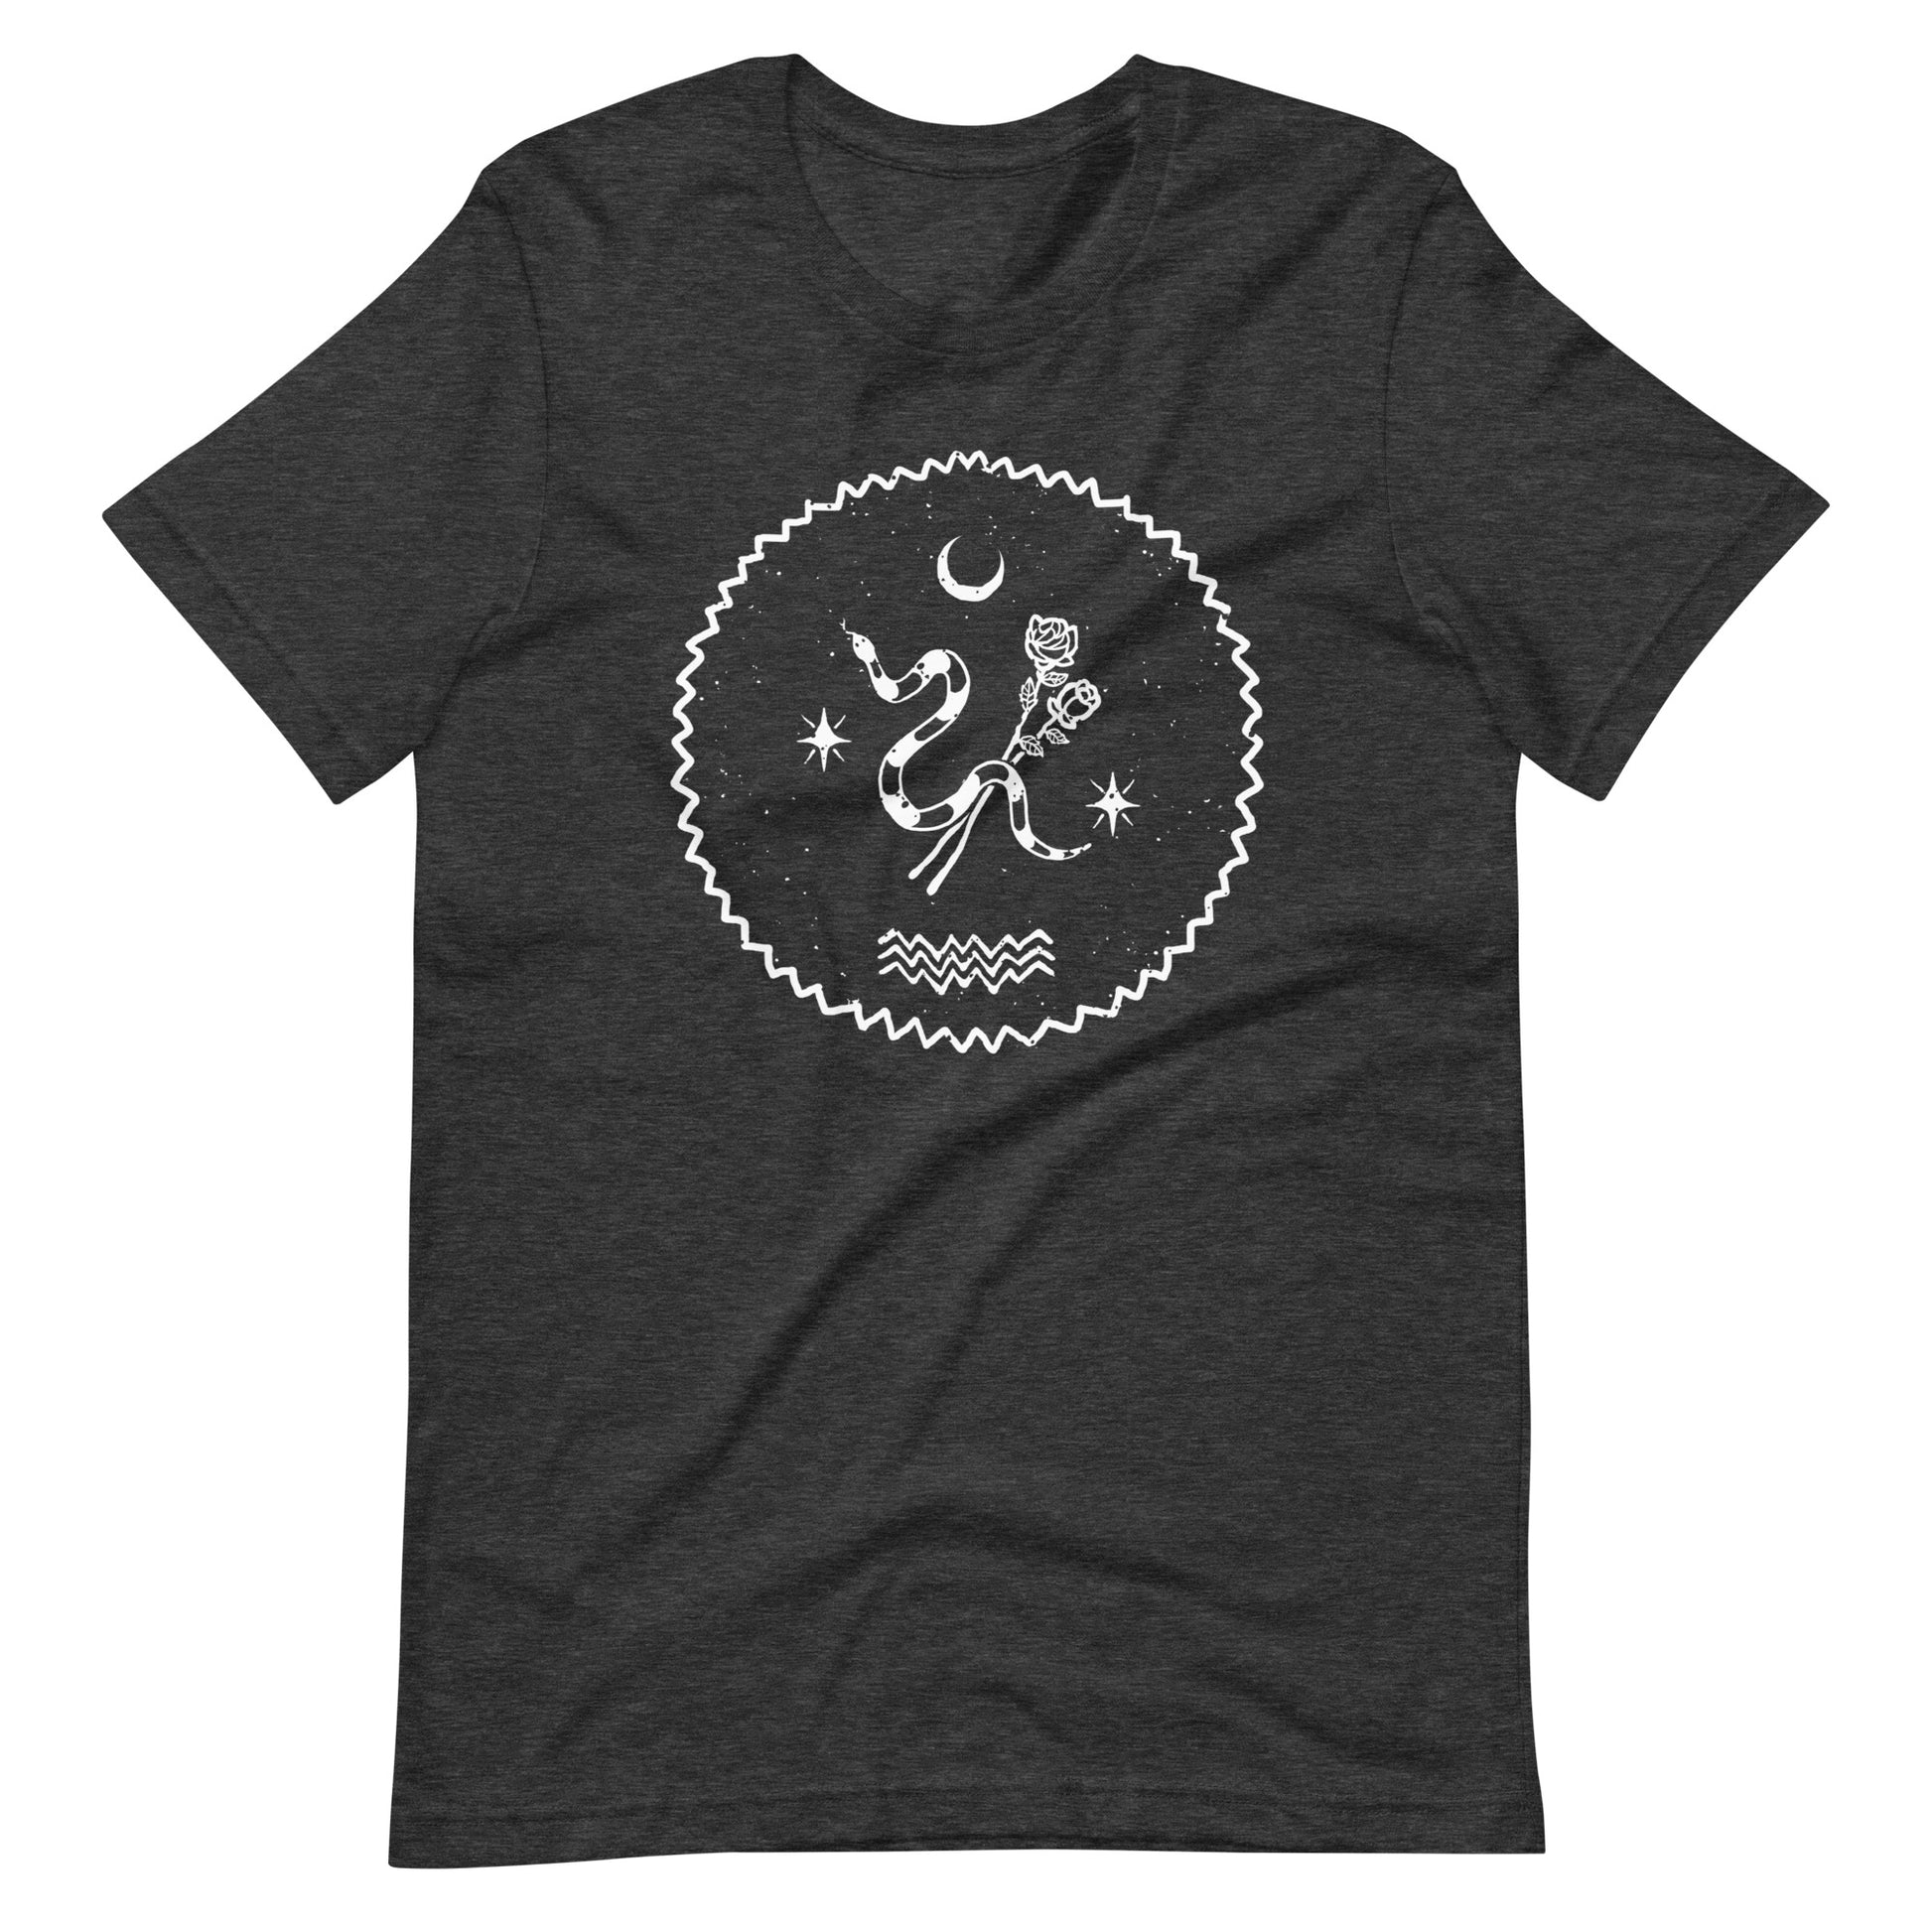 Scented Poison - Men's t-shirt - Dark Grey Heather Front